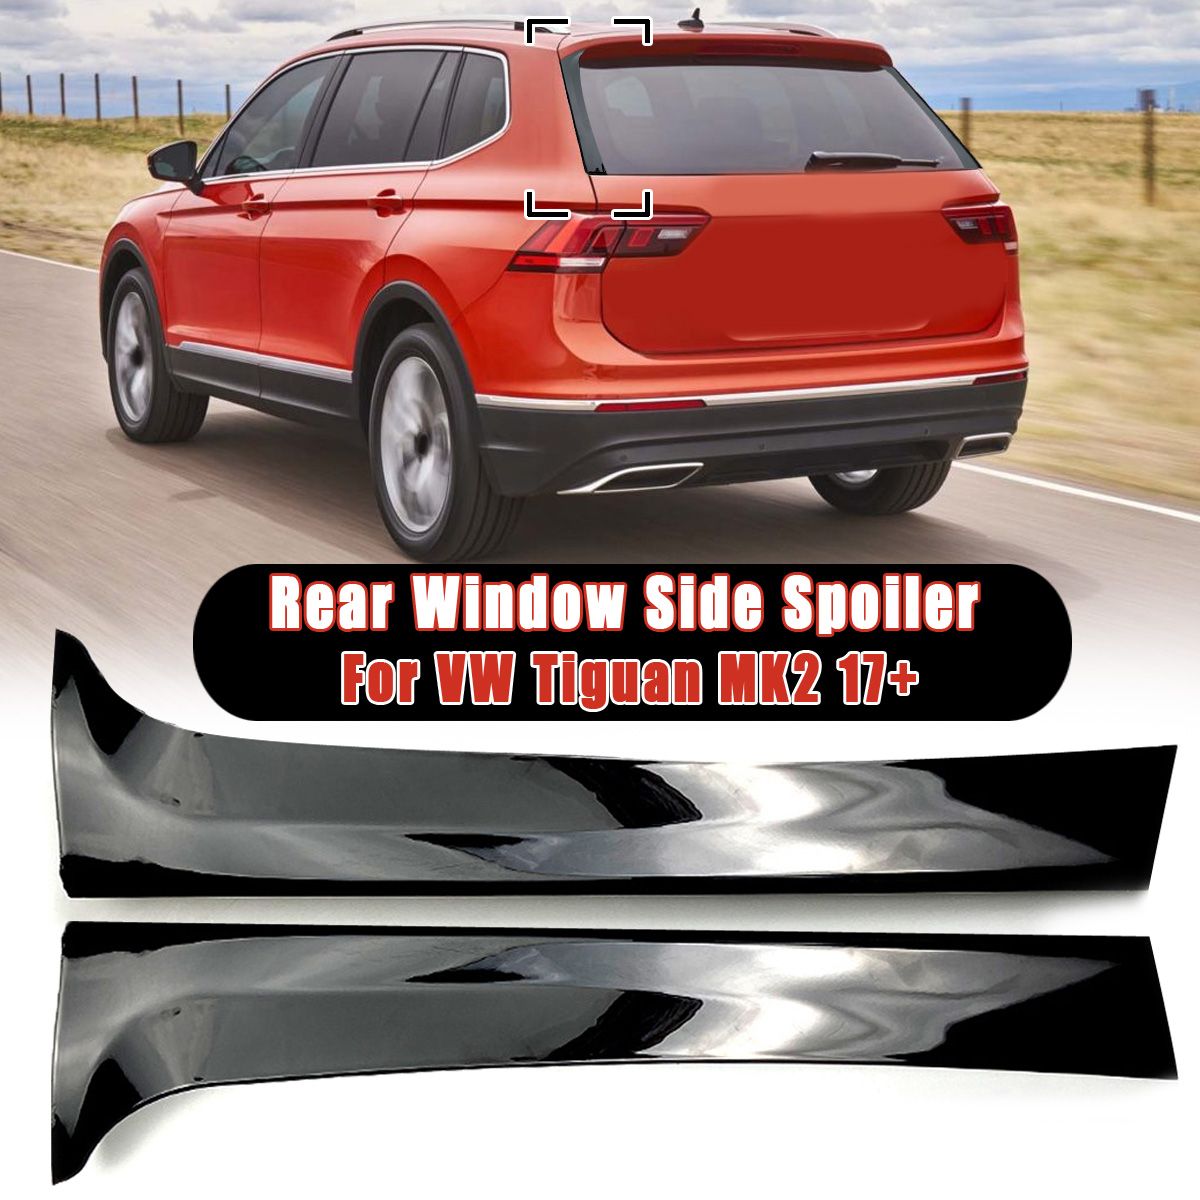 2Pcs-Car-Rear-Window-Side-Spoiler-Wing-Canard-Canards-Splitter-For-VW-Tiguan-MK2-2017-1656110